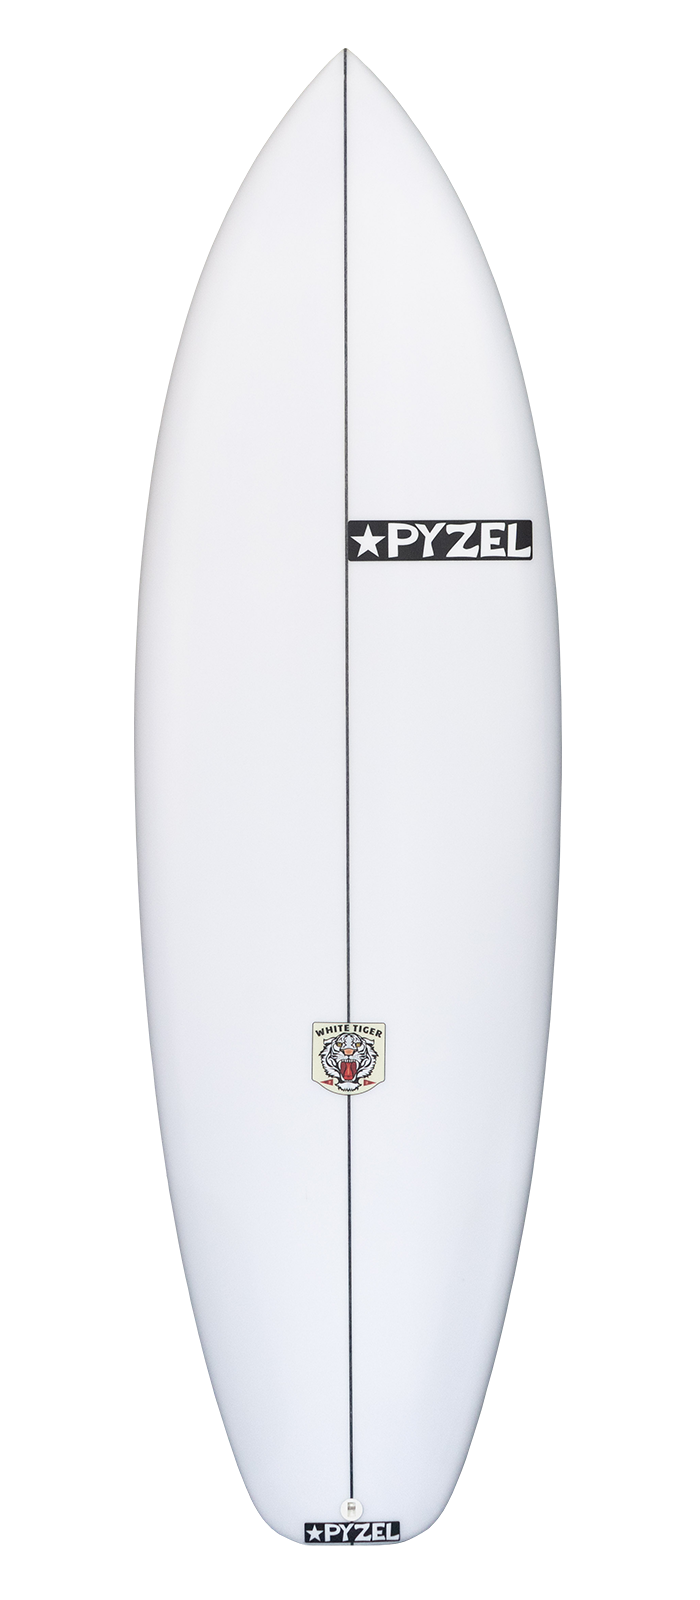 Planche de surf PYZEL White Tiger 5'8 - 33,5Lts FCSII